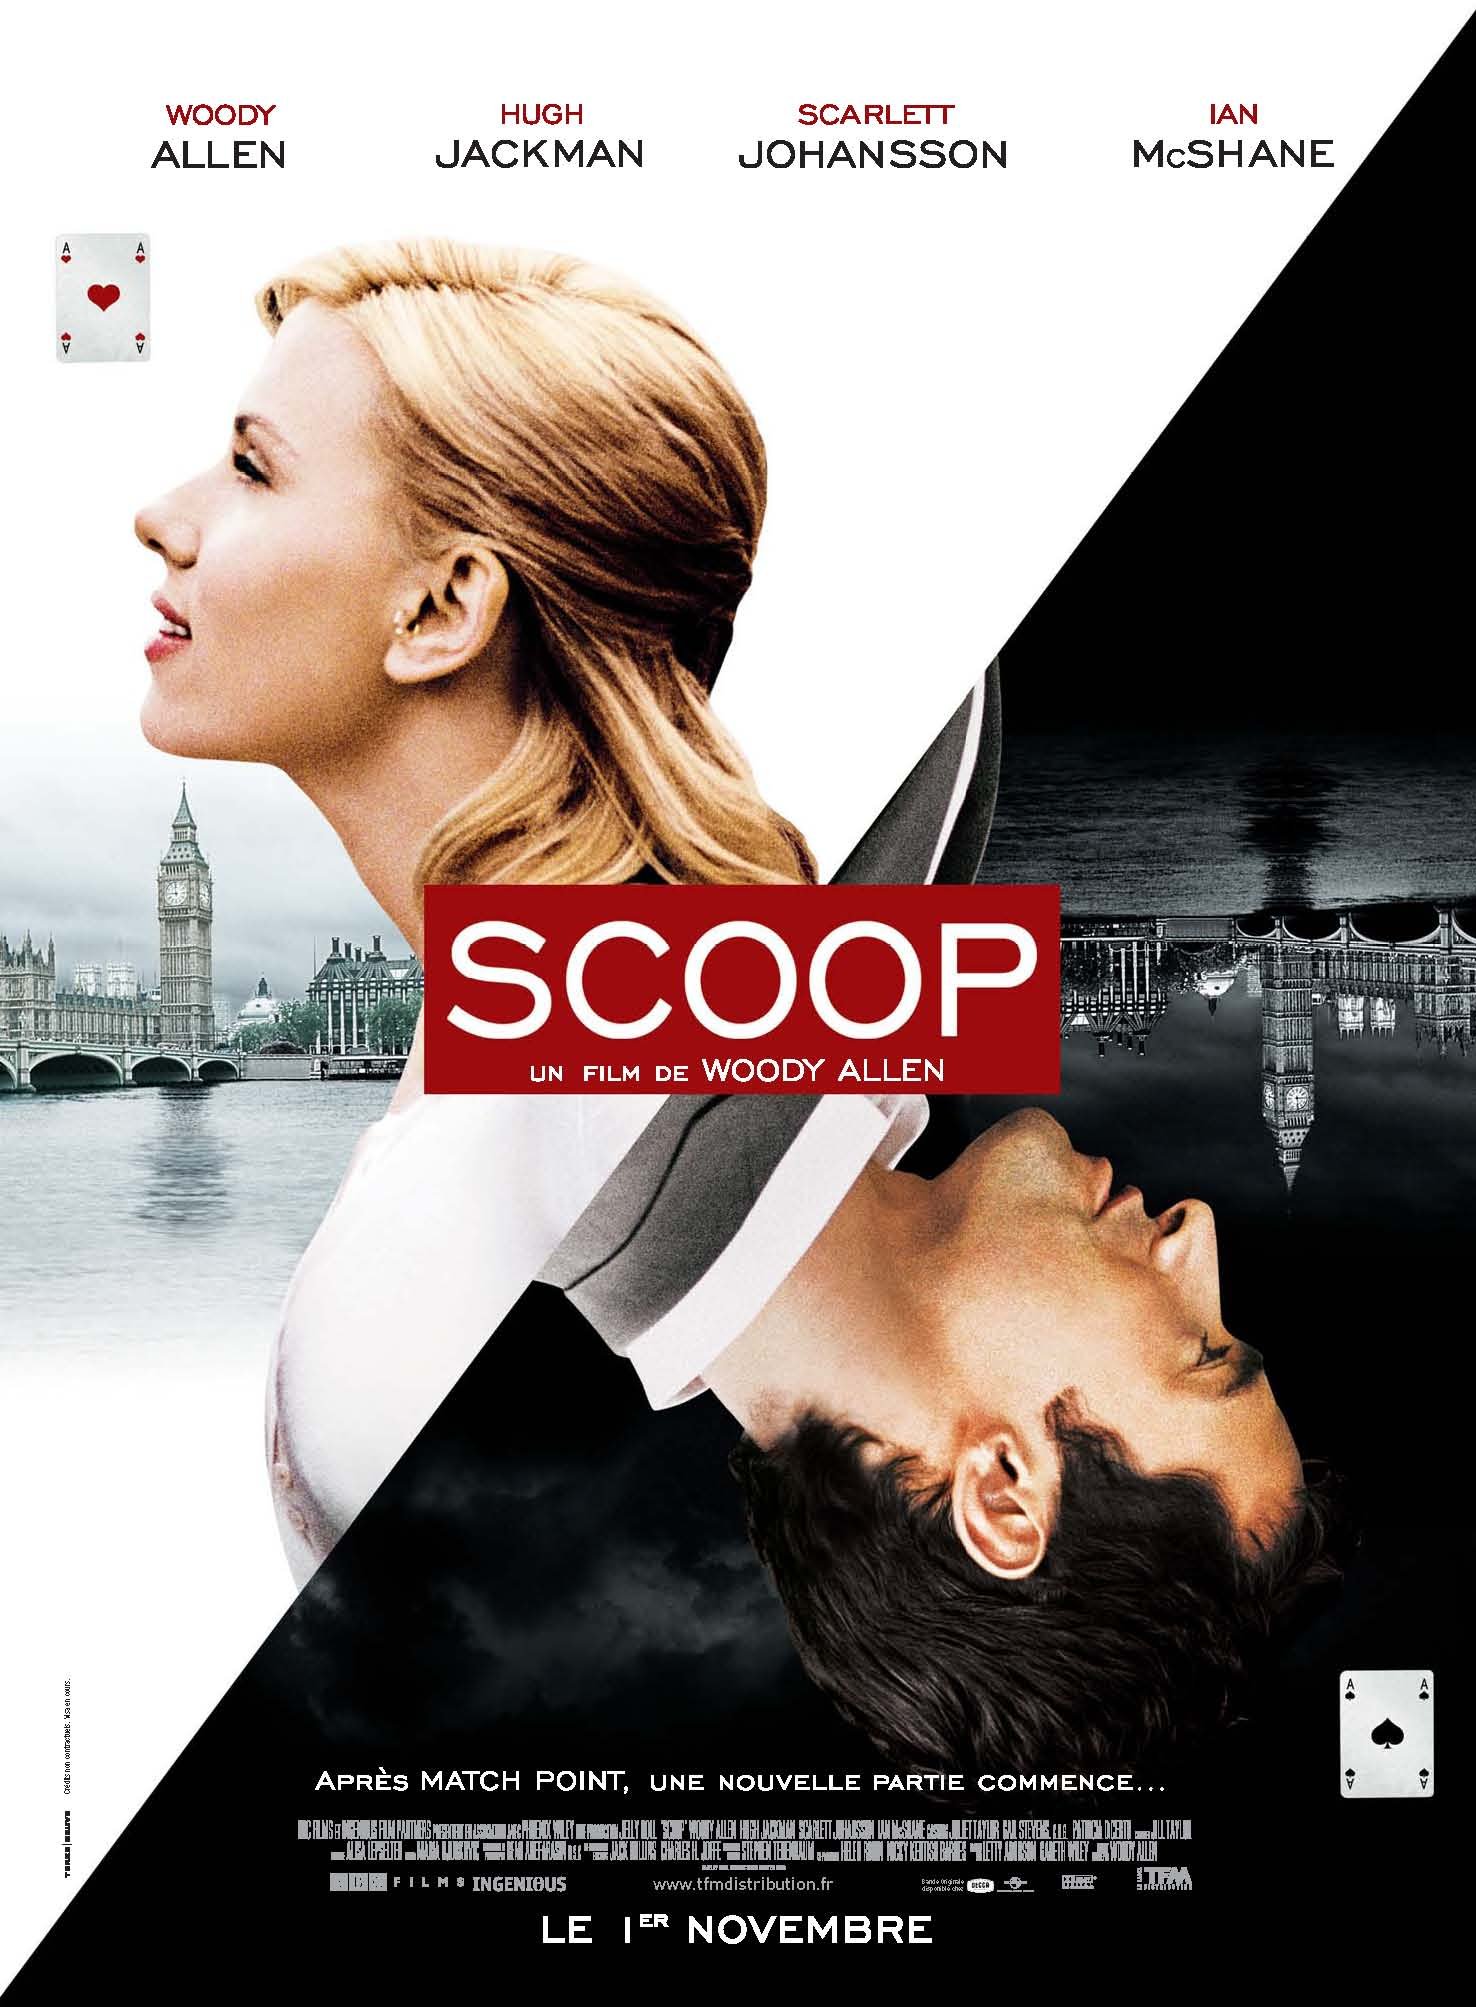 L'affiche du film Scoop v.f.